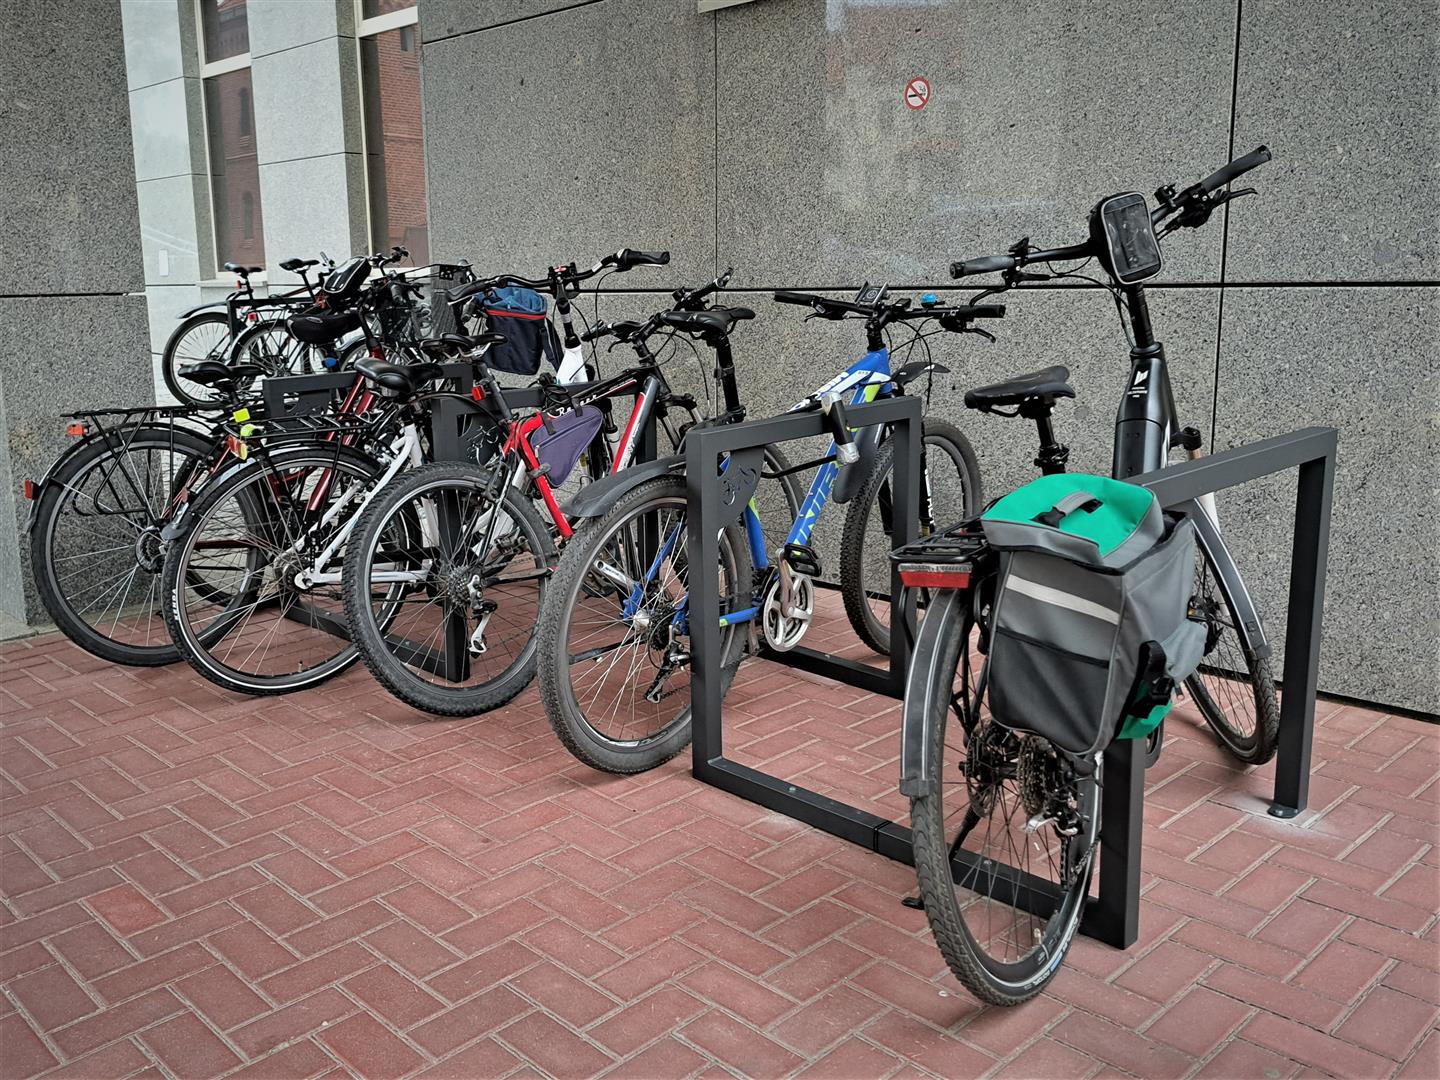 Przed Sądem Okręgowym zamontowano stojaki rowerowe rower Olsztyn, Wiadomości, zemptypost, zPAP